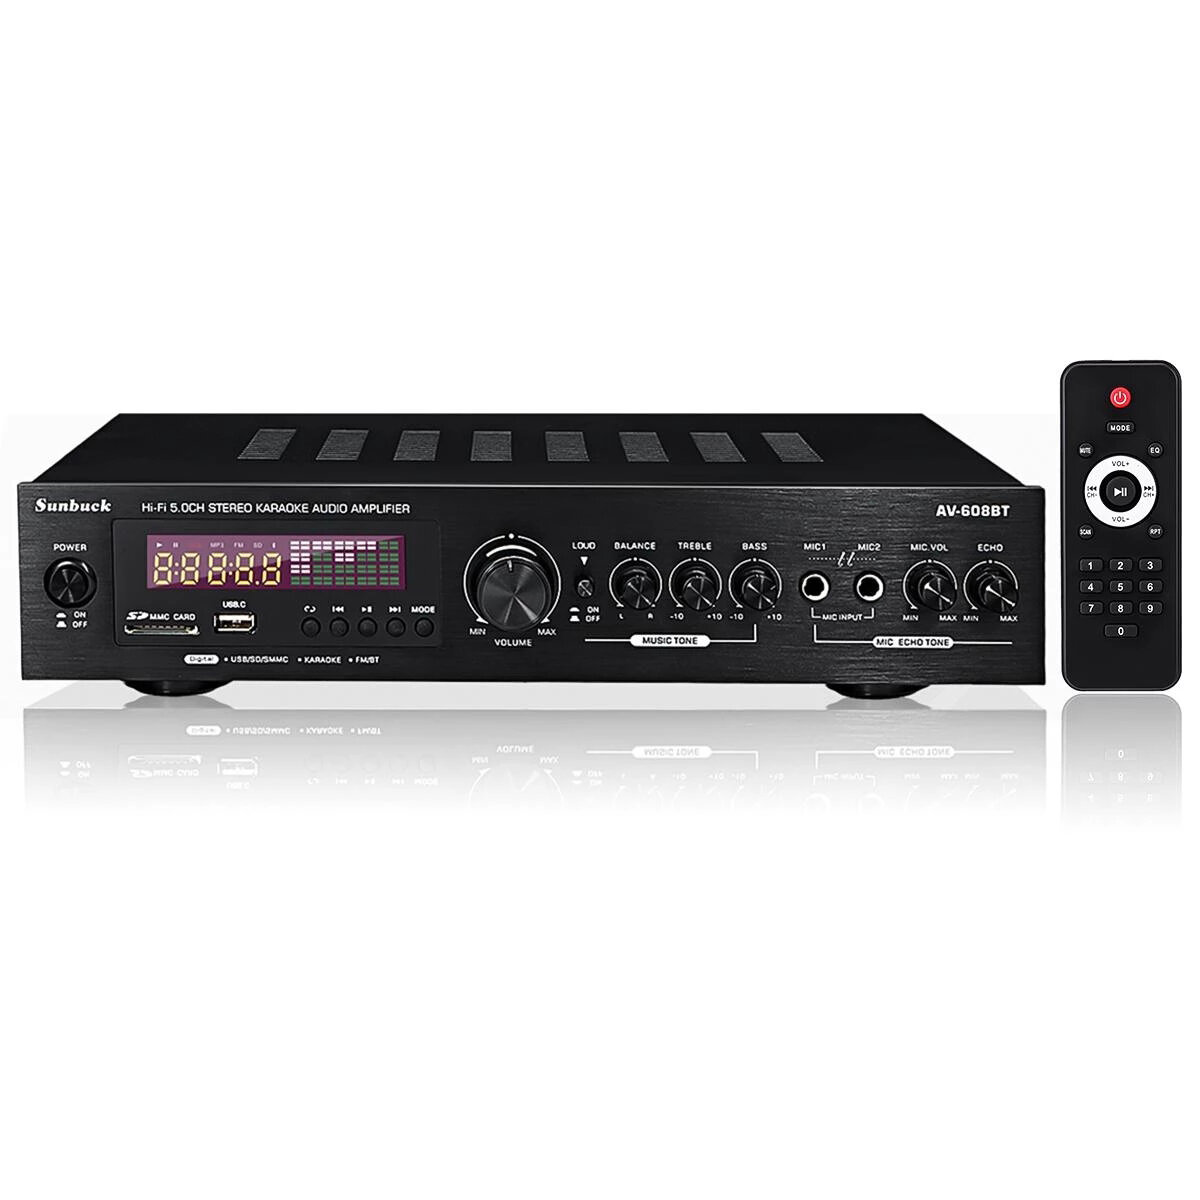 

Sunbuck AV-608BT 2x200W 5.1 Channel bluetooth 5..0 Home Theater Amplifier Stereo Karaoke Audio Amplifier with Remote Con